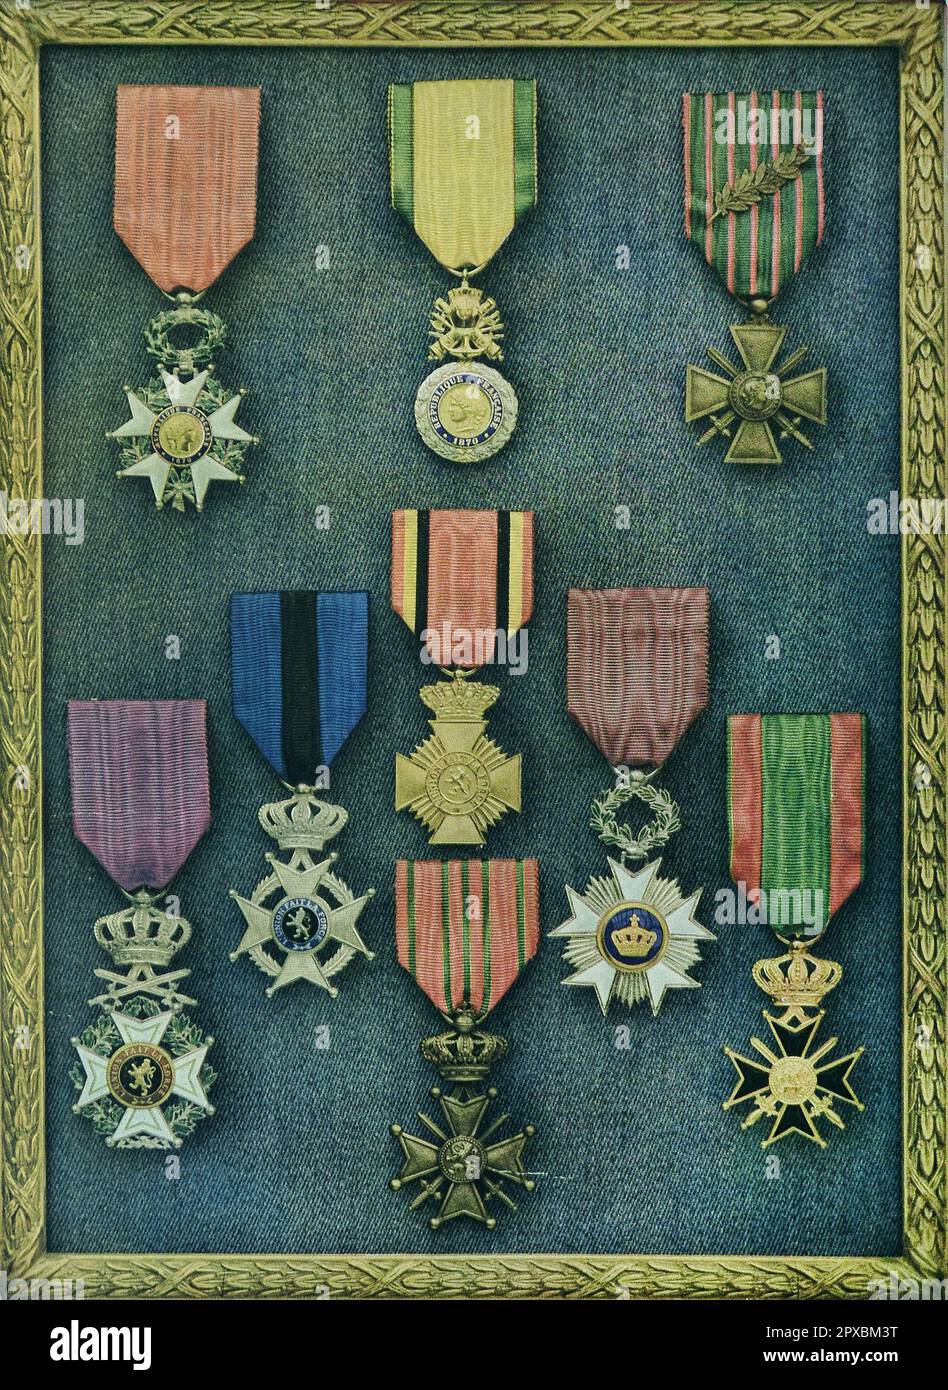 Site De Vente De Médailles Militaires Sur Iqoqo-collection